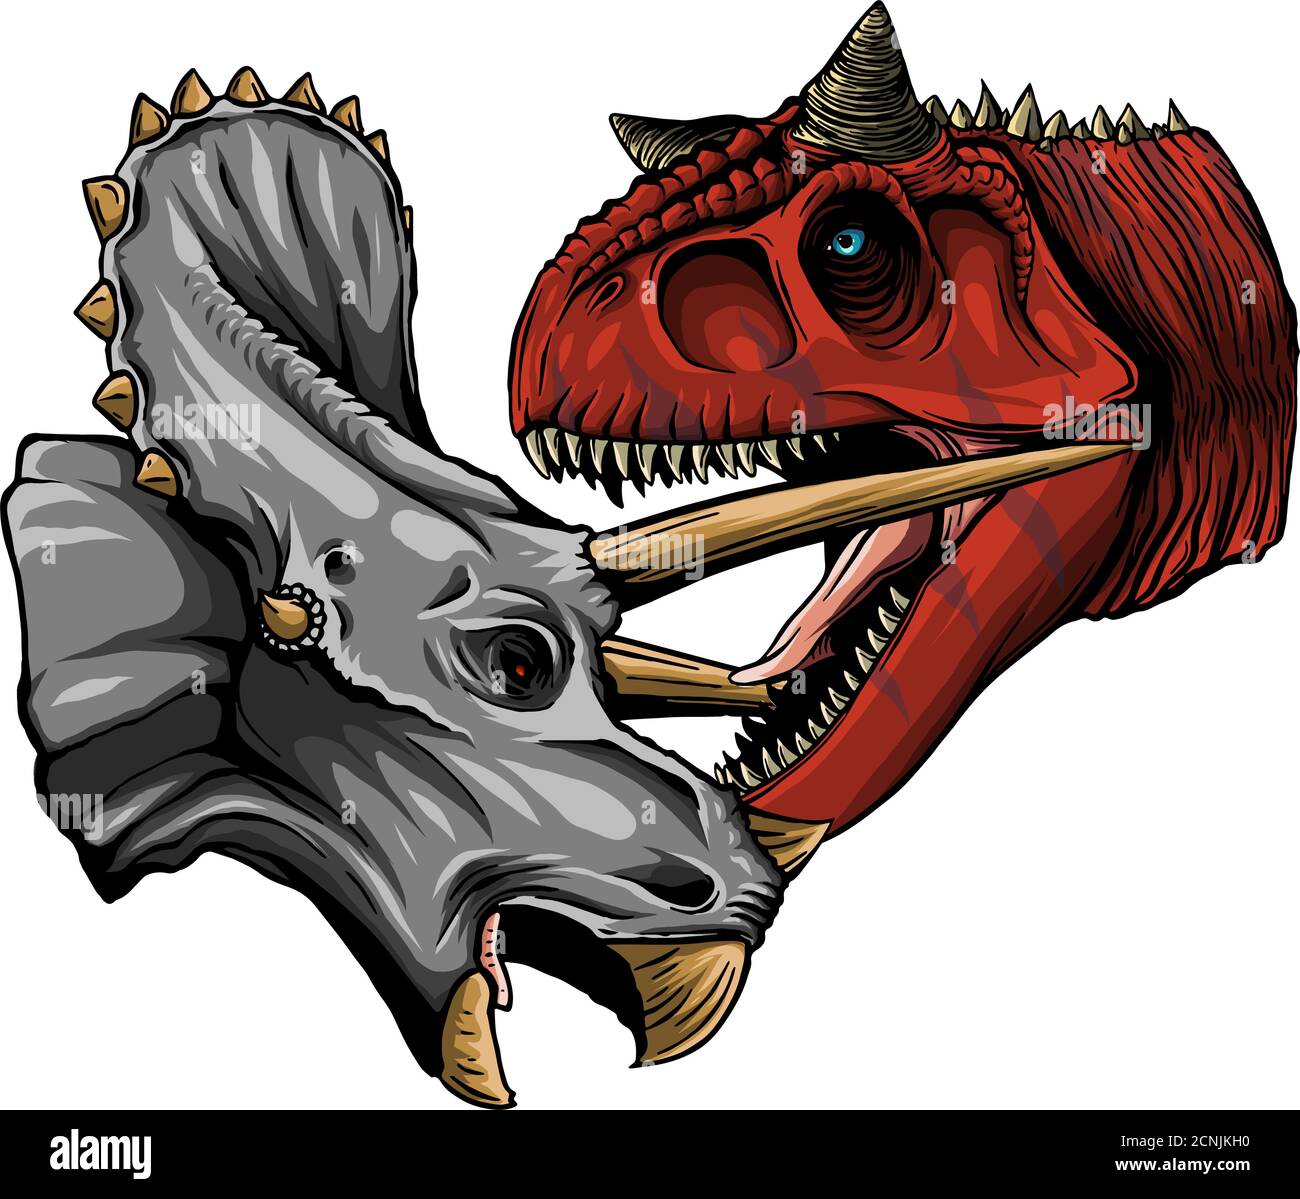 Le traçage vectoriel de dinosaures Tyrannosaurus combat les tricératops dans l'aquarelle style Illustration de Vecteur